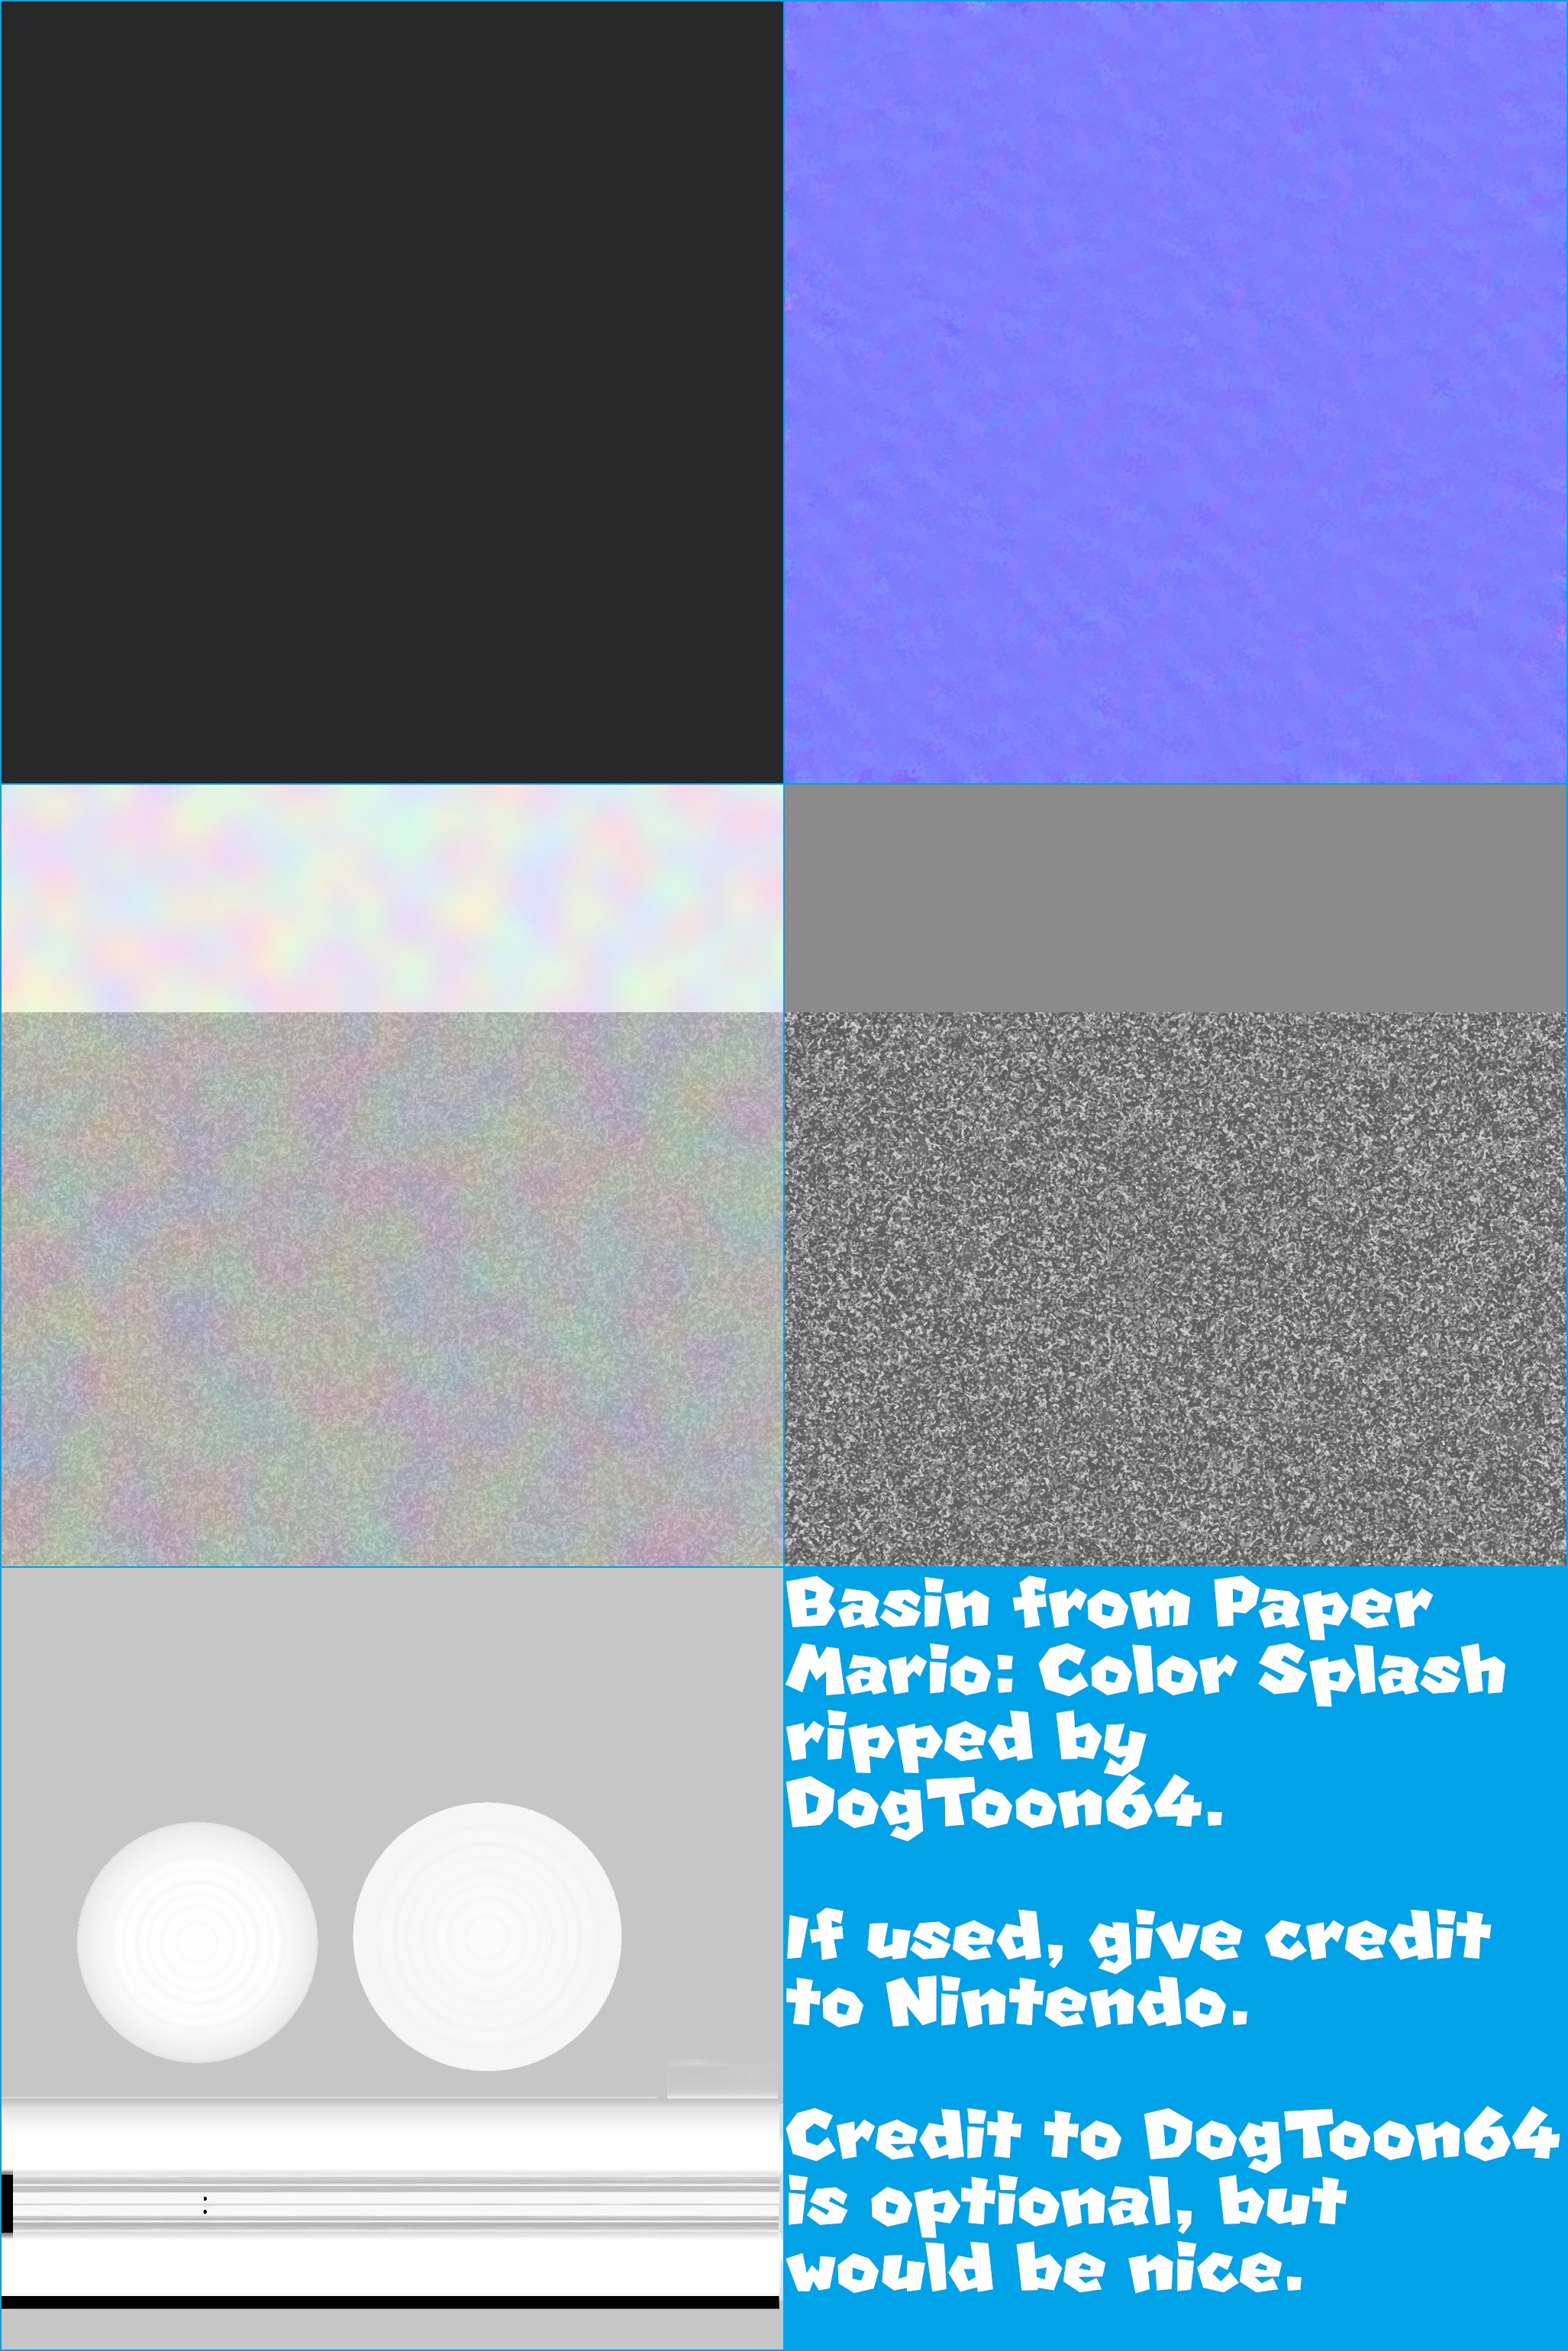 Paper Mario: Color Splash - Basin